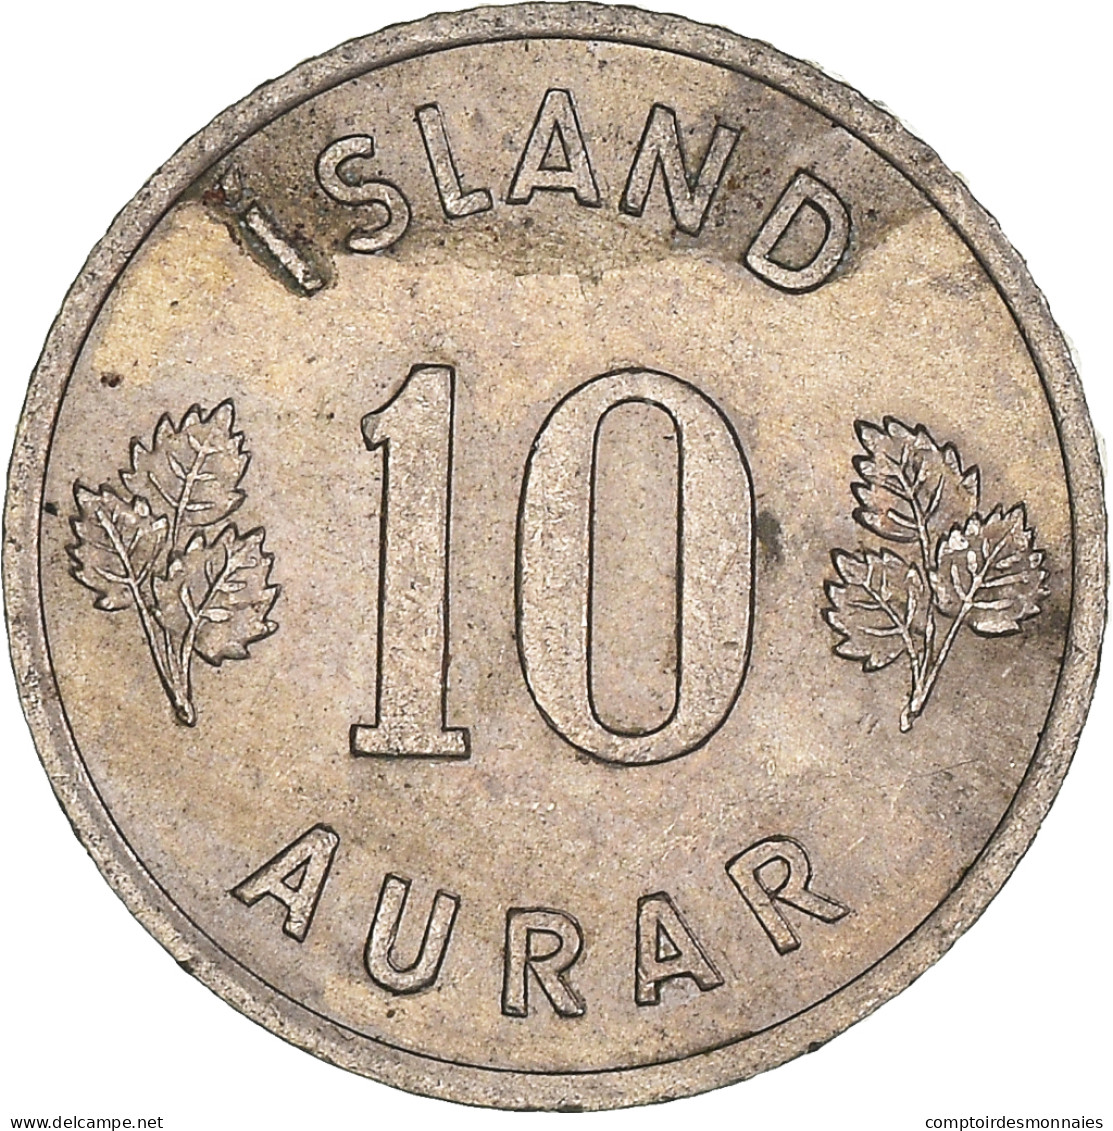 Monnaie, Islande, 10 Aurar, 1958 - IJsland